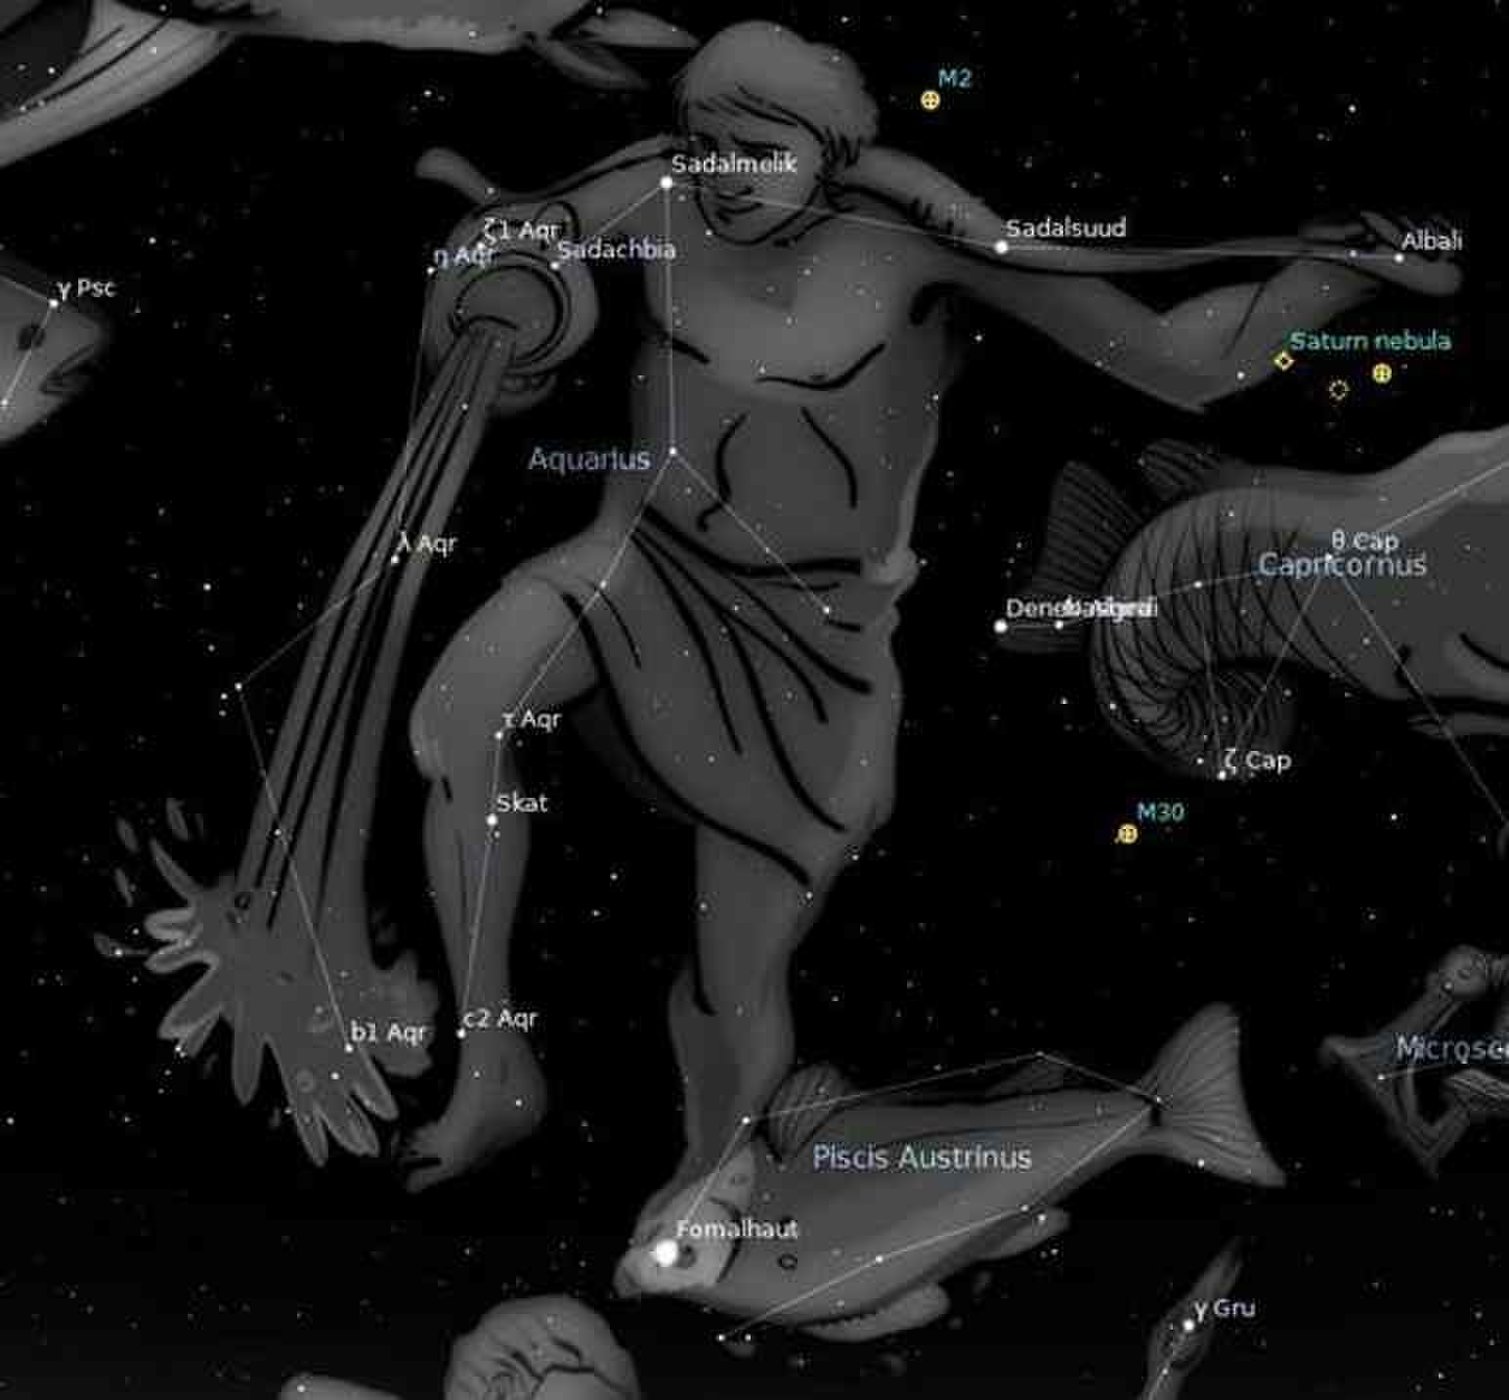 Созвездие вода. Аквариус Созвездие Водолея. Знак зодиака Водолей Созвездие астрономия. Звезда Скат в созвездии Водолея. Ганимед Созвездие Водолея.